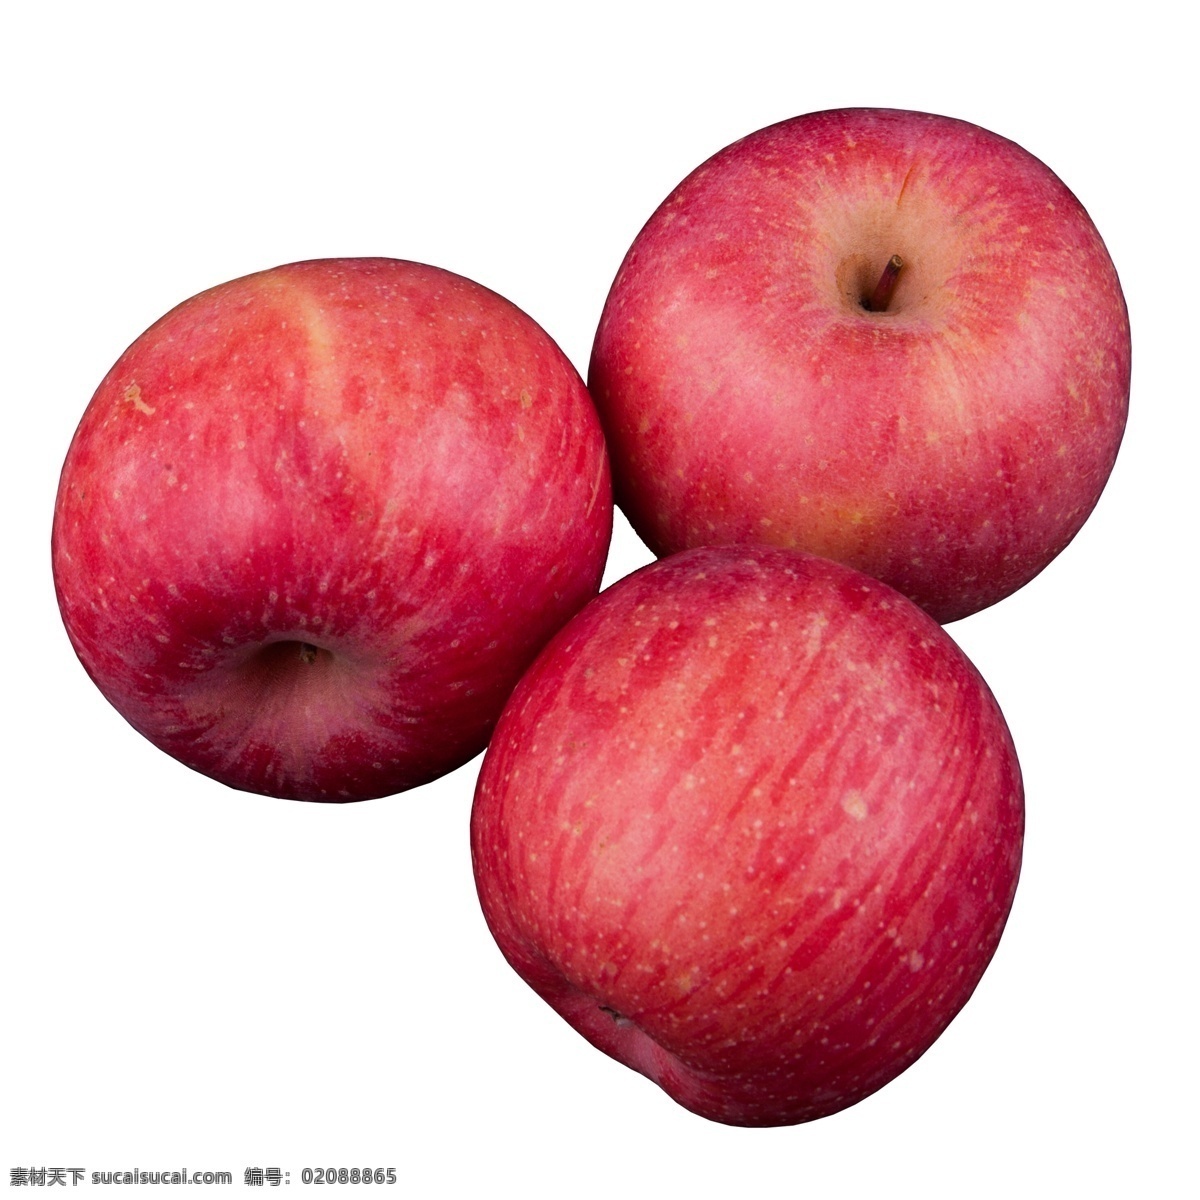 实拍 果林 果树 三个 水果 苹果 大红苹果 红富士苹果 大个红苹果 苹果果实 红色苹果果实